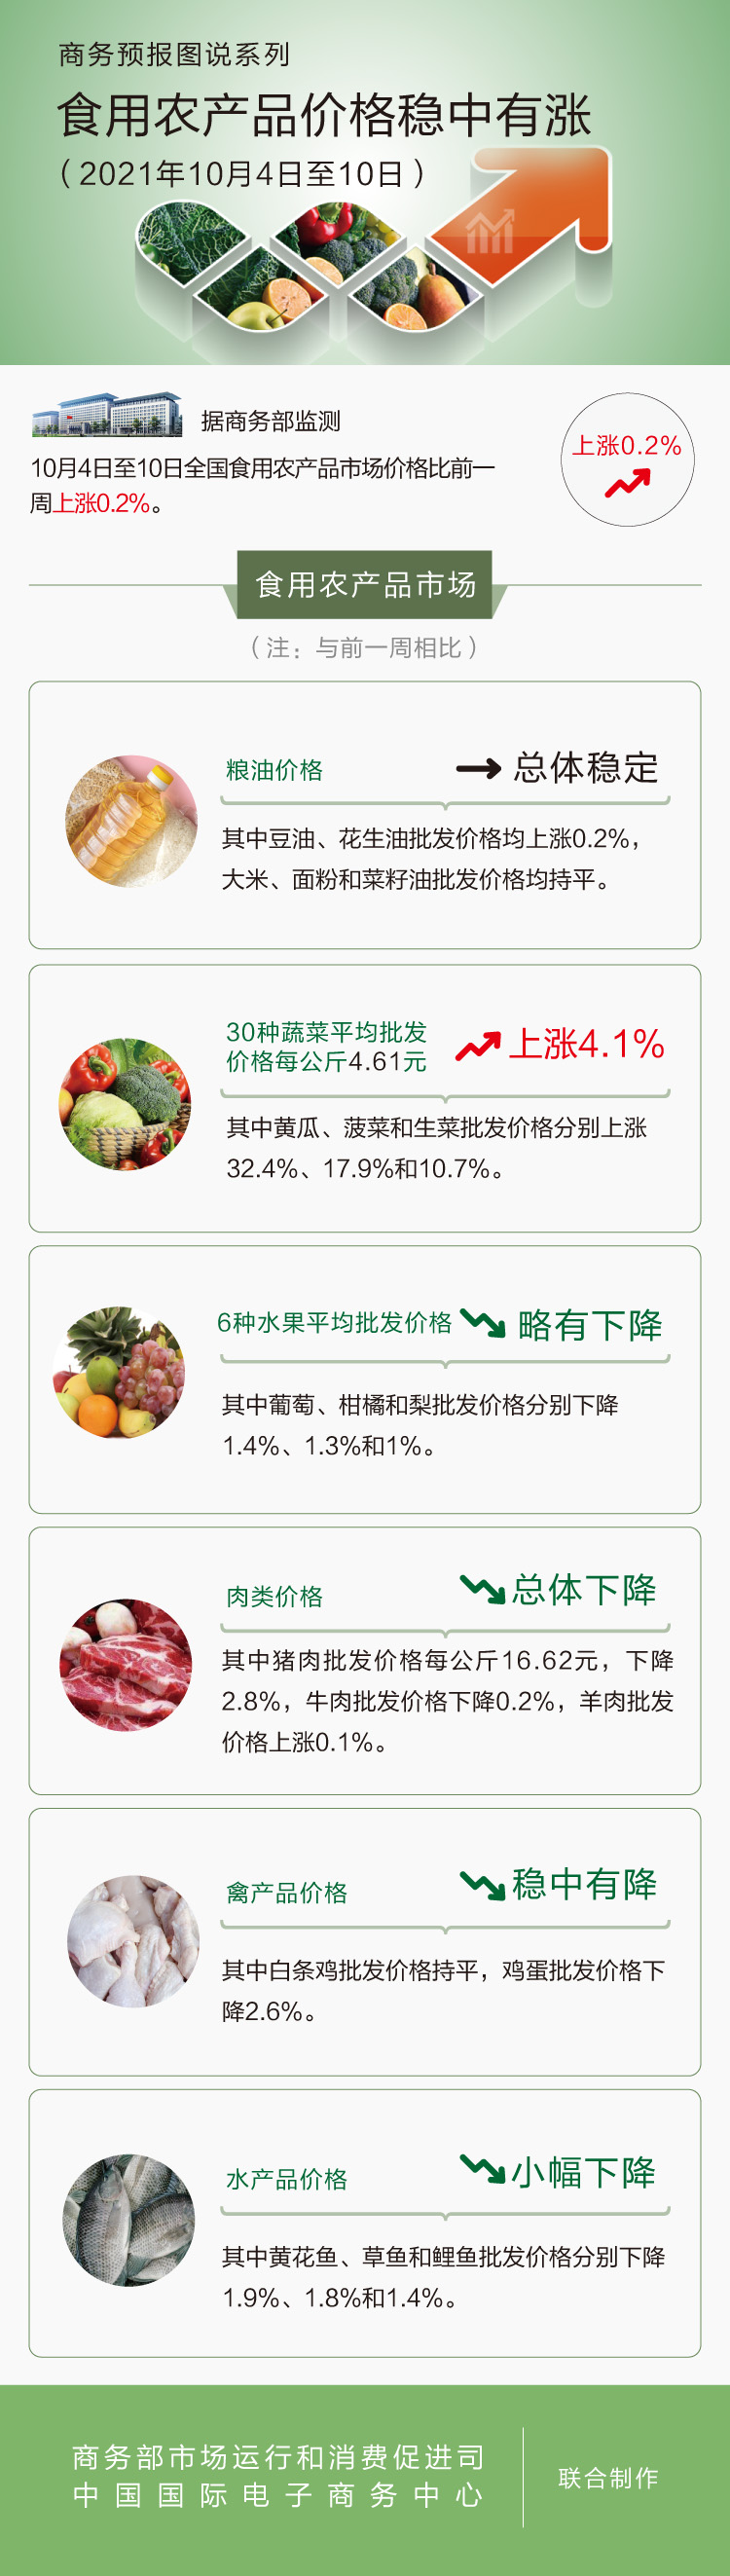 10月第2周食用农产品价格稳中有涨 猪肉下降2.8%